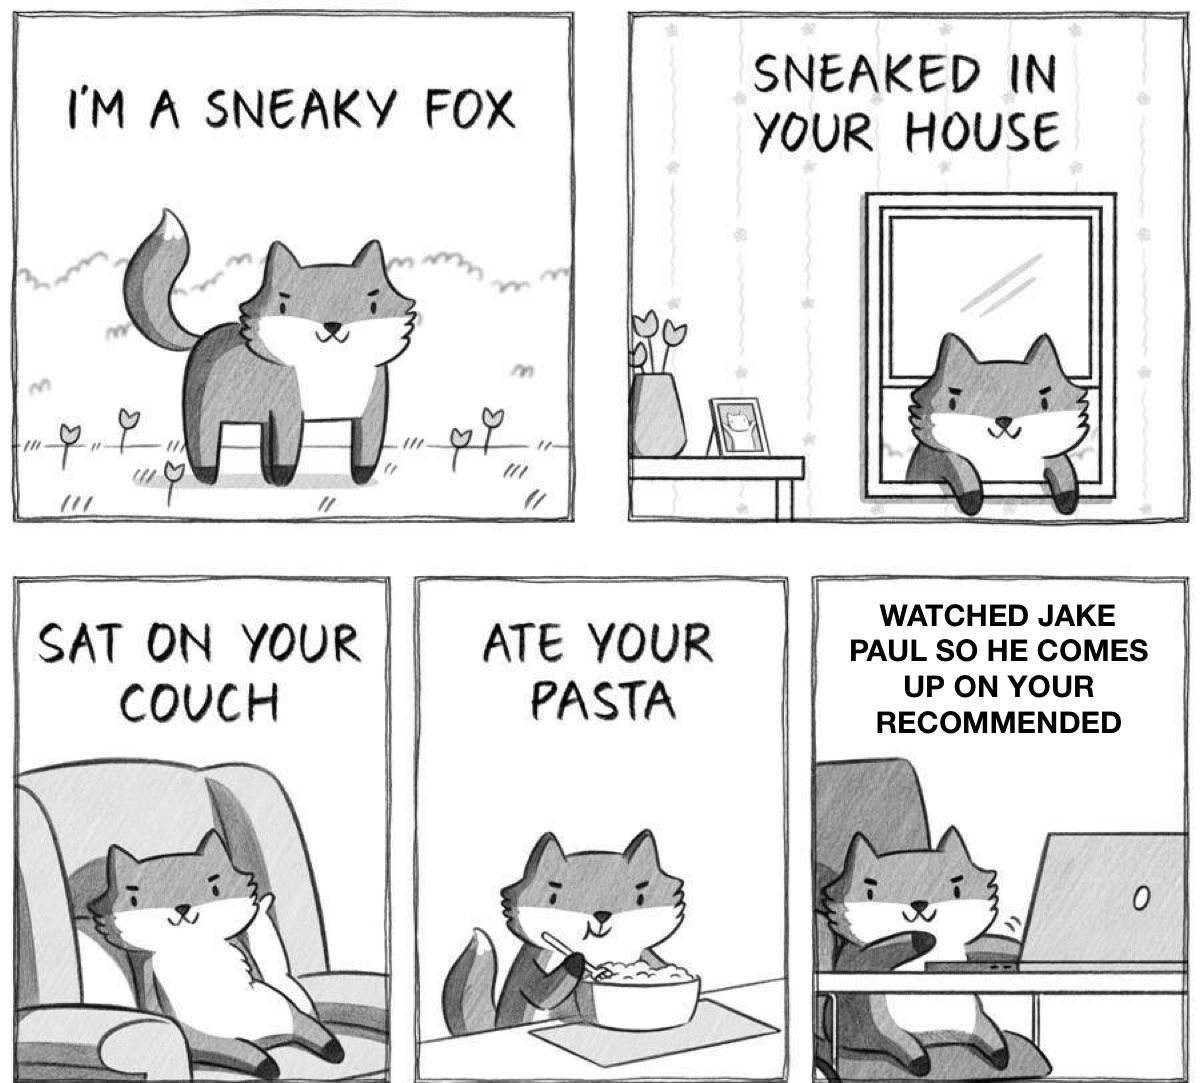 You’ve went too far Fox sir